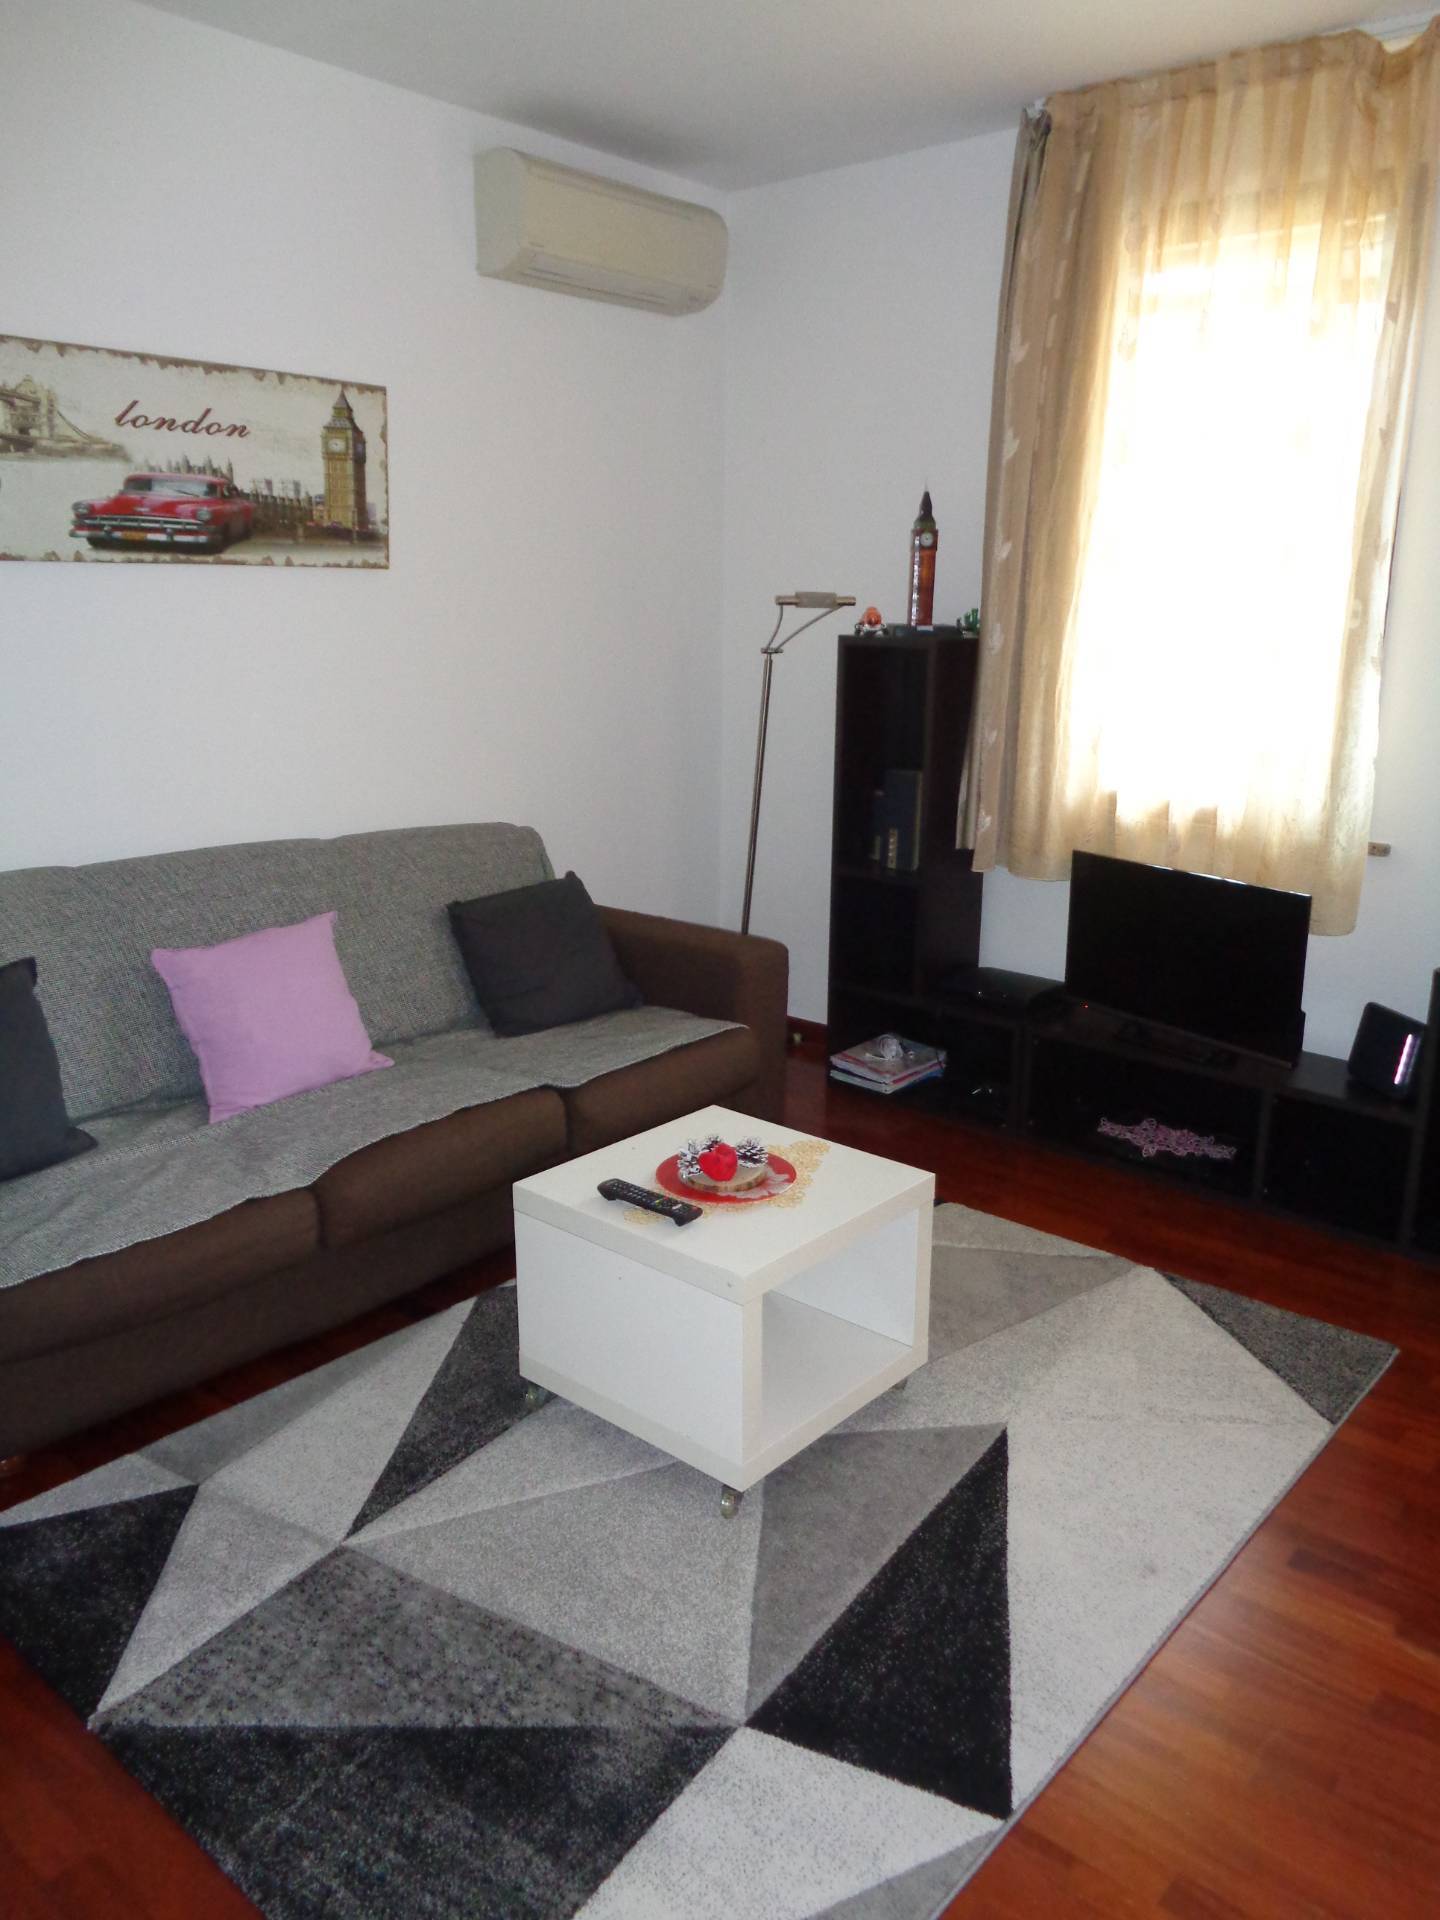 Appartamento in affitto a Longiano, 3 locali, zona Località: Longiano, prezzo € 700 | CambioCasa.it